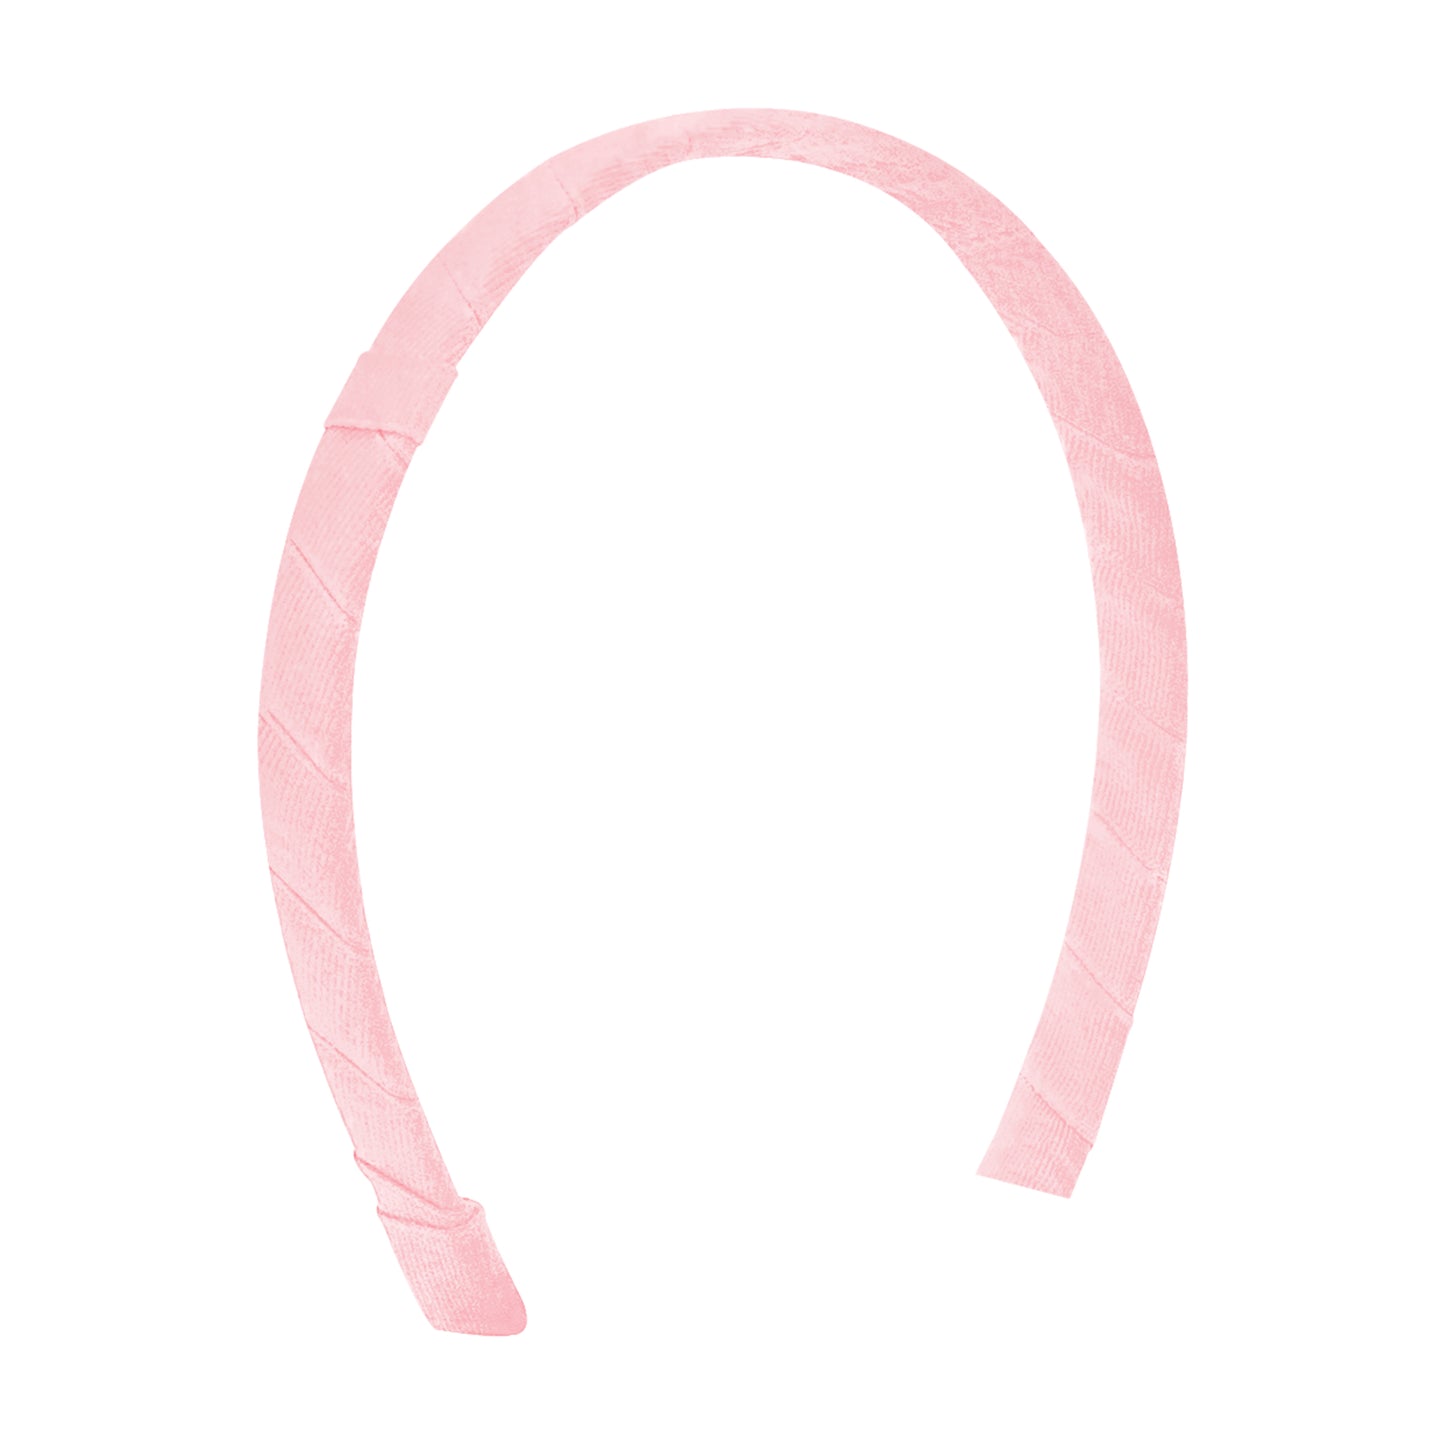 Grosgrain Add-a-Bow Headband - Light Pink